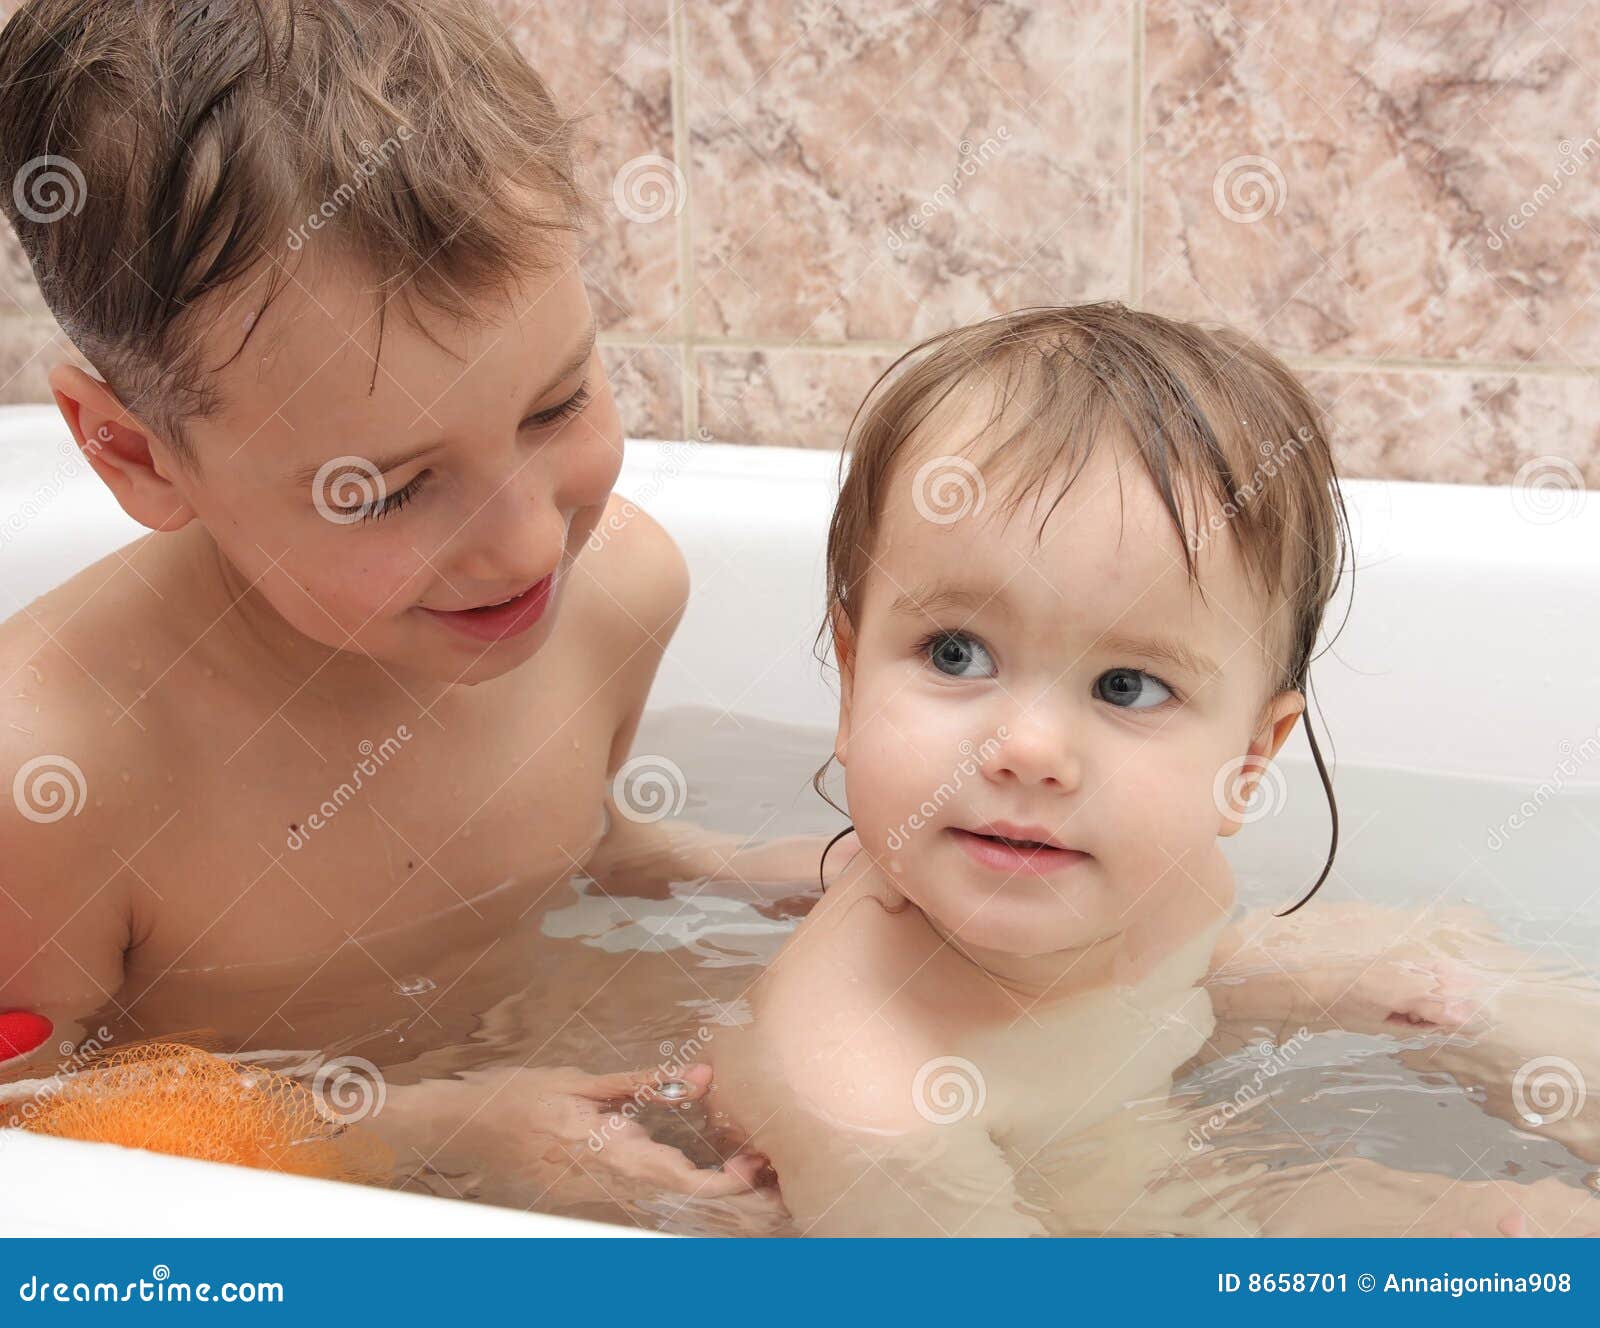 Сестра моет маленькую сестру. Мальчик и девочка в ванной. Маленькие дети купаются в ванной. Купаемся вместе. Мальчик и девочка купаются в ванной.